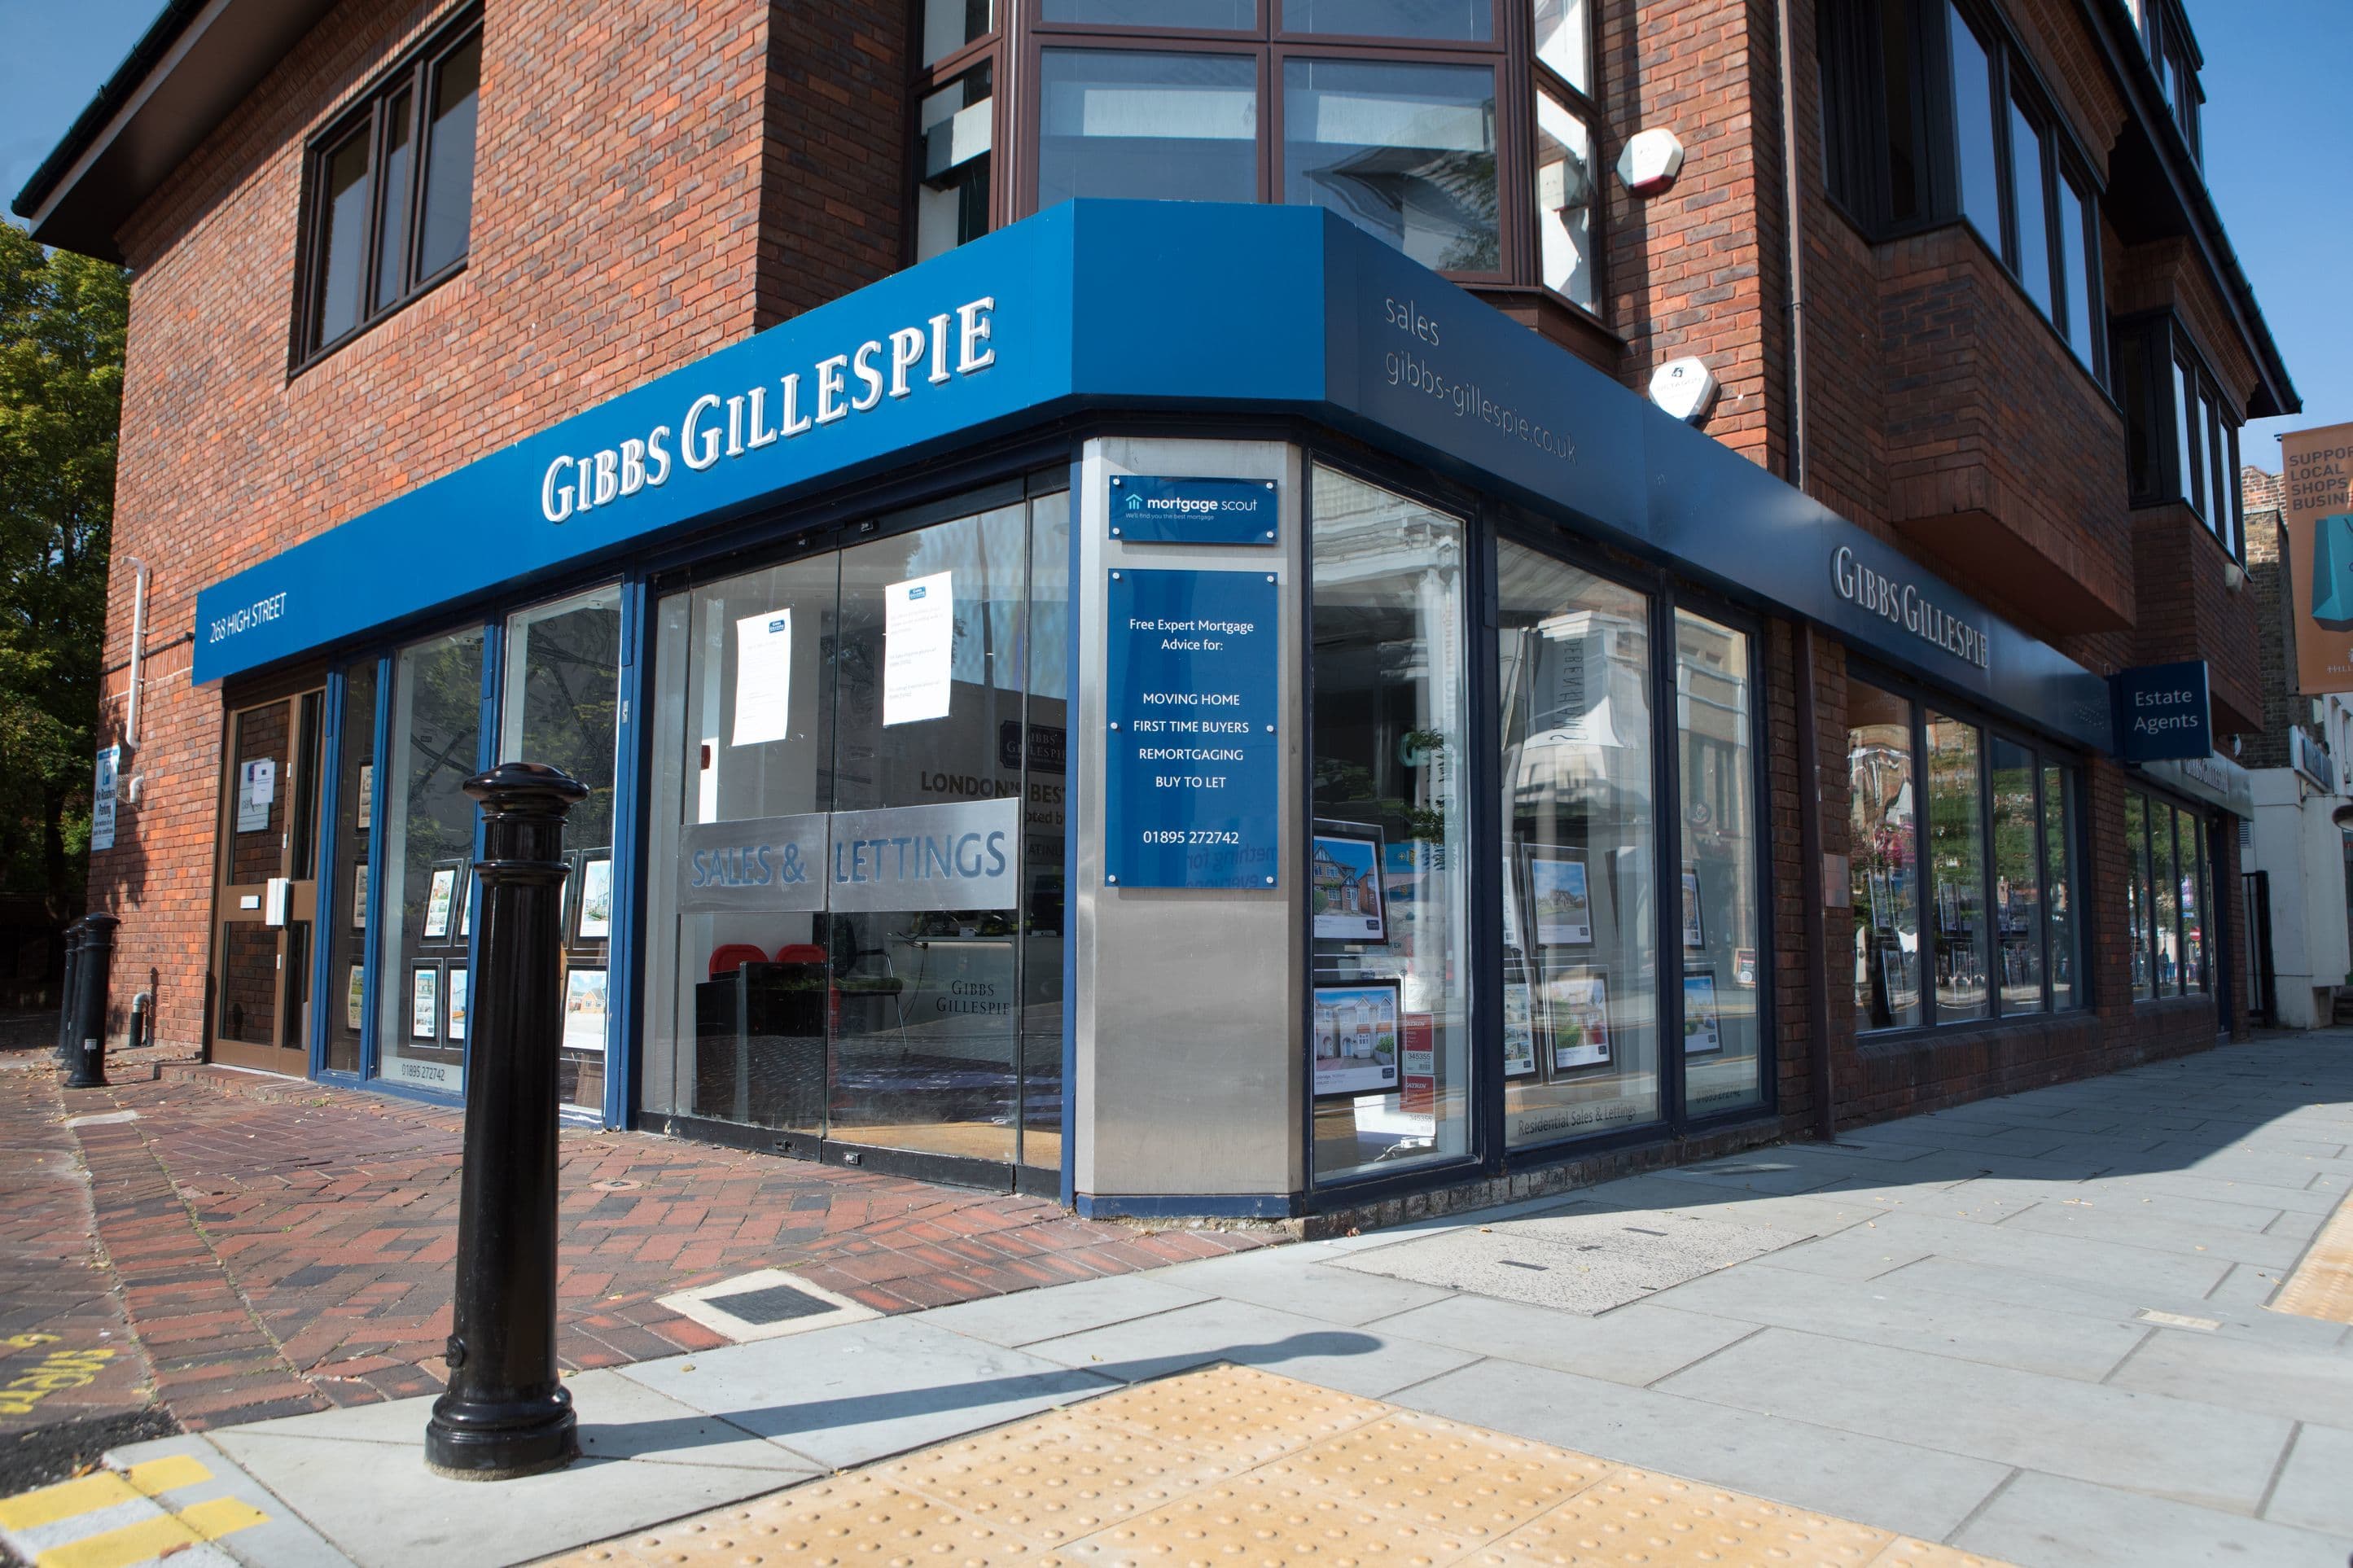 Gibbs Gillespie Sales Ltd